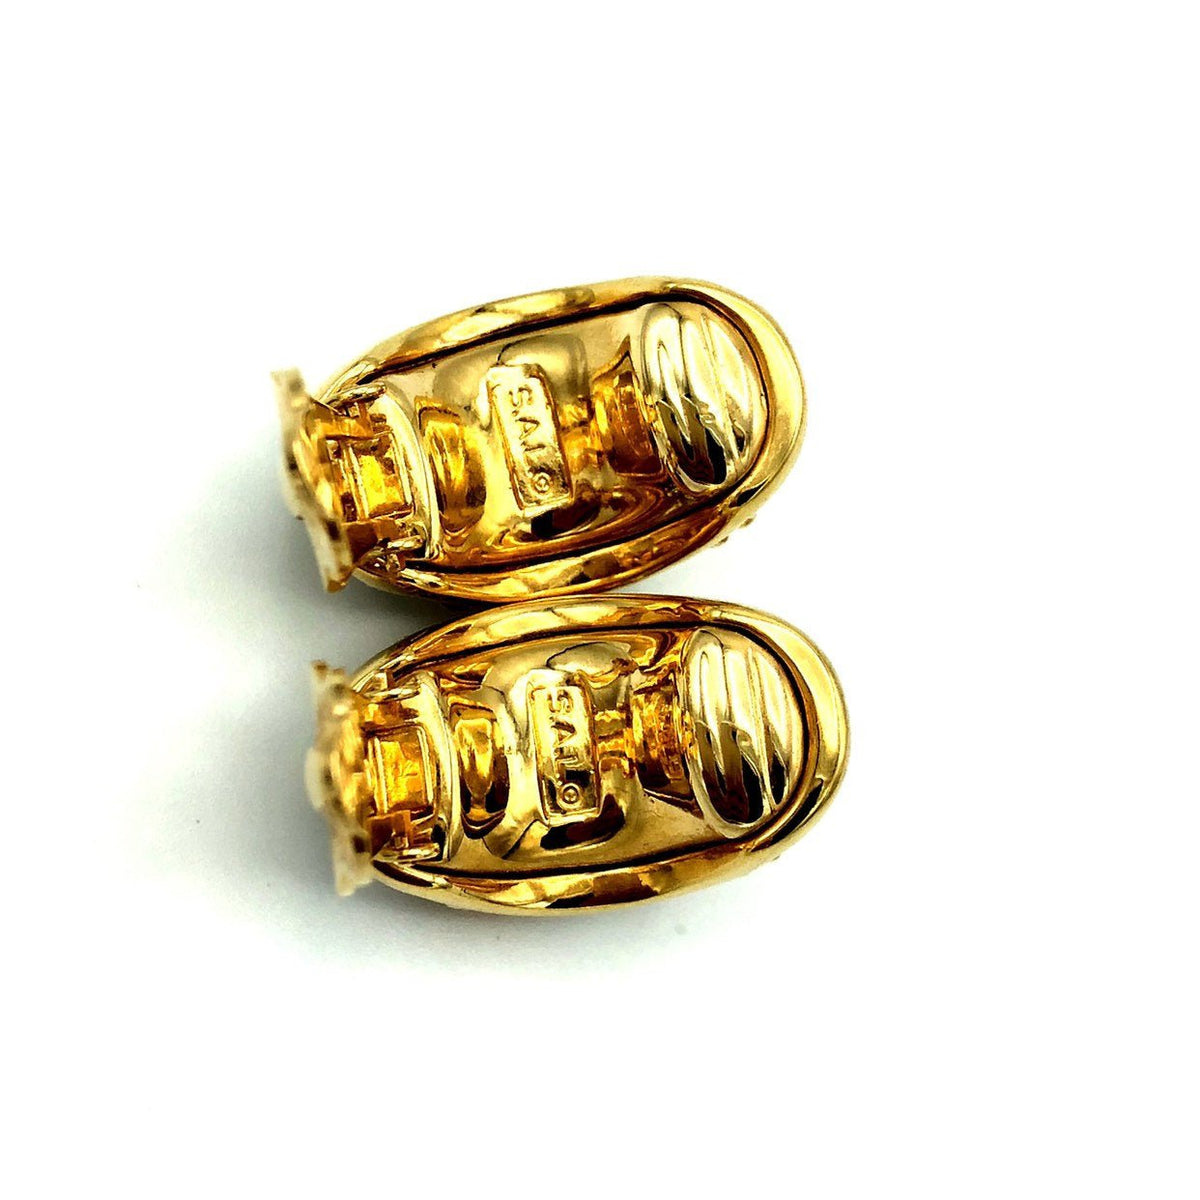 SWAROVSKI Gold Diamante Vintage Half Hoop Clip-On Earrings - 24 Wishes Vintage Jewelry